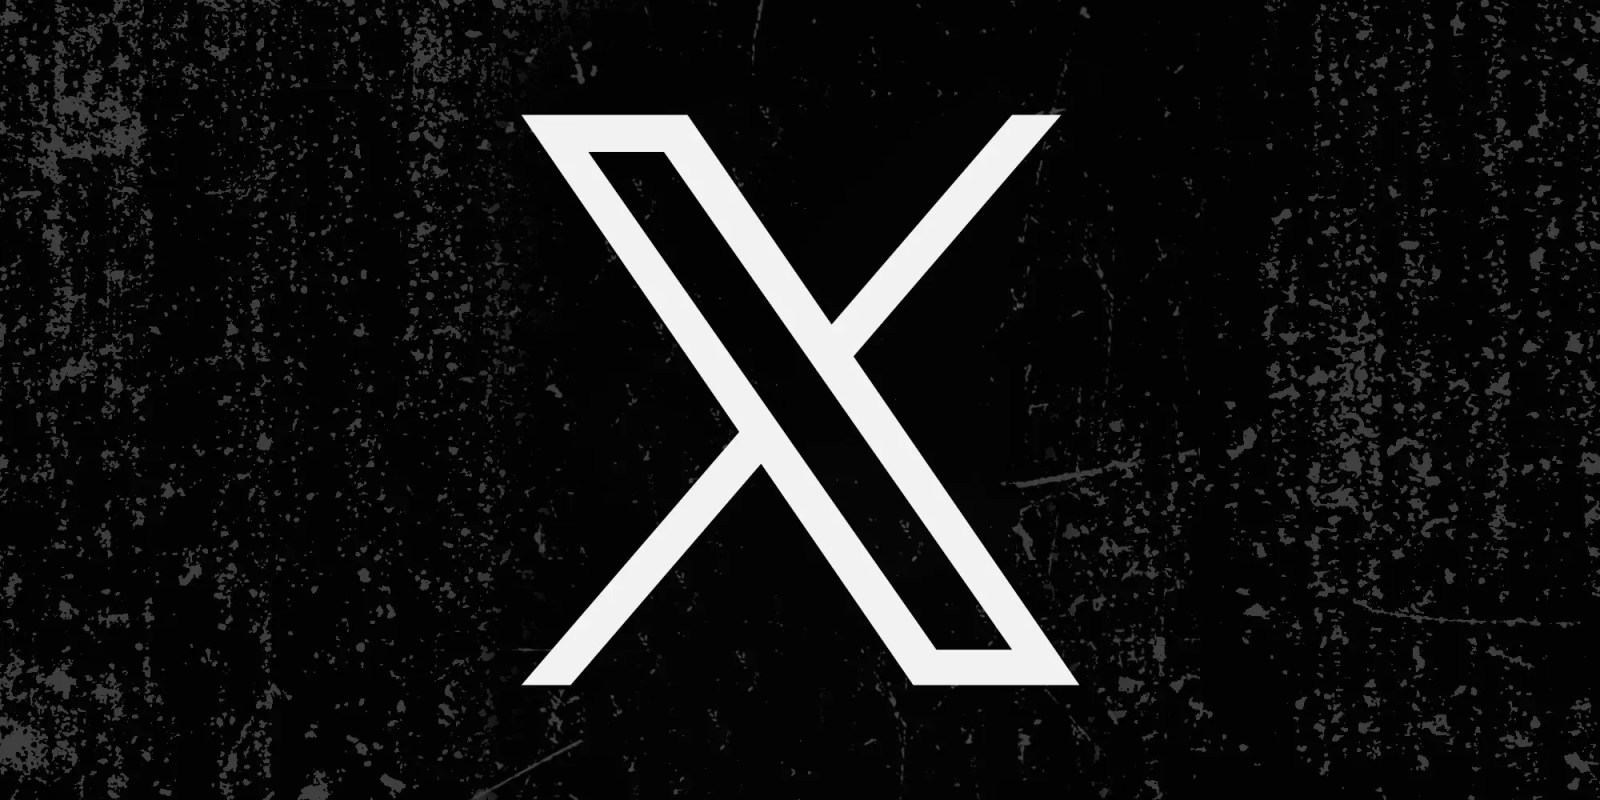 X roundup | Company logo on grunge background